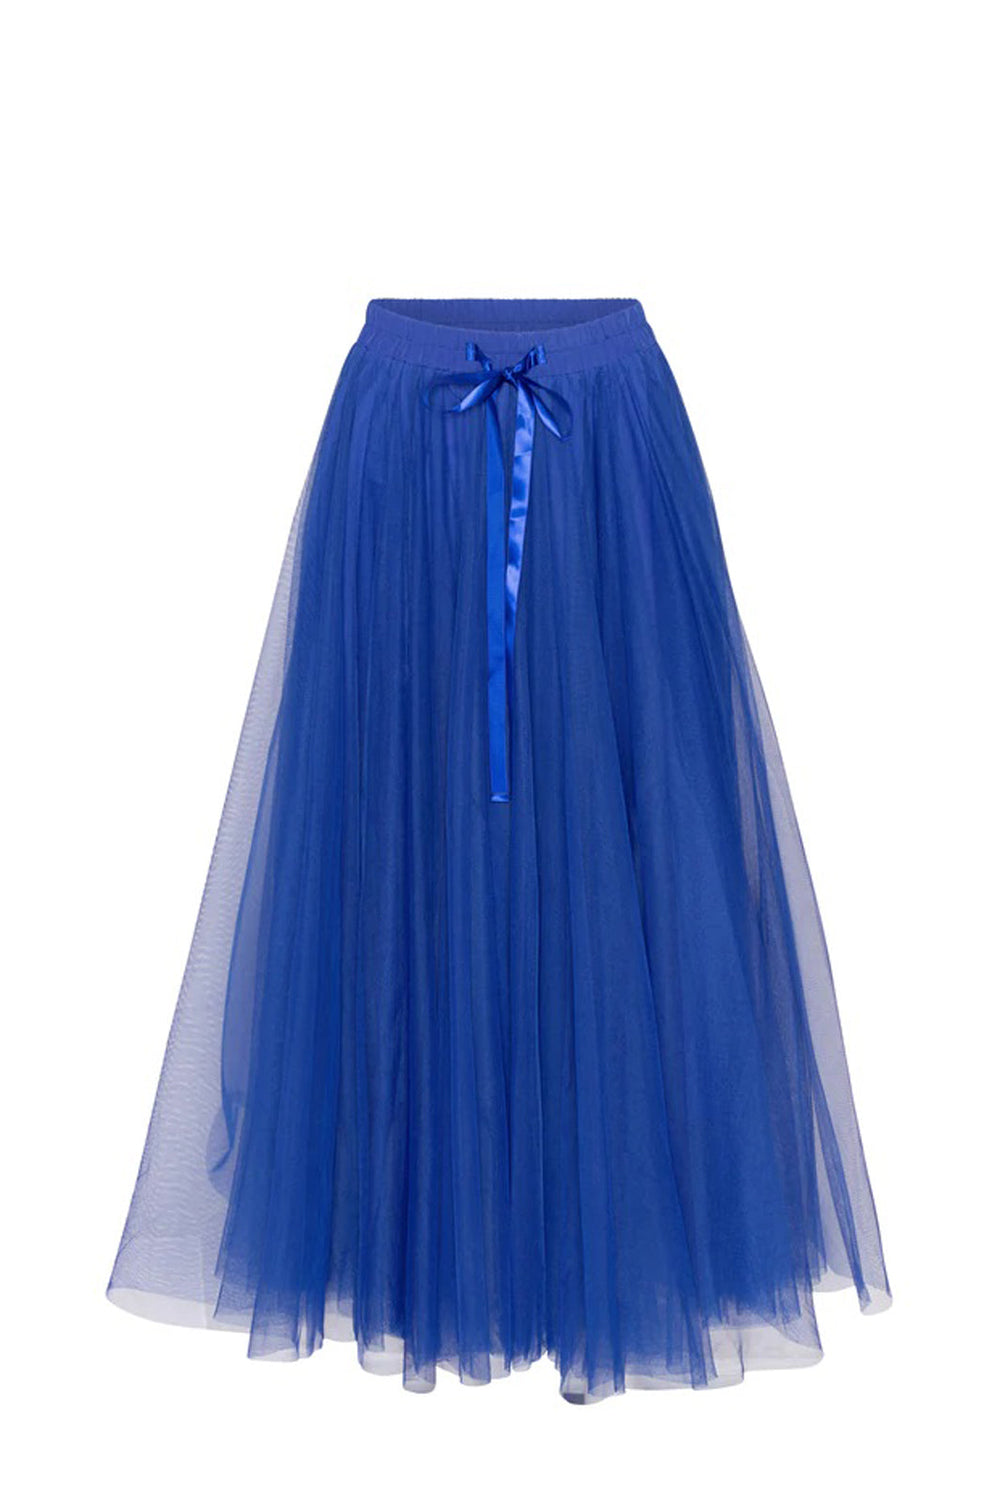 Emm Copenhagen - Daisy Skirt - Electric Blue Nederdele 